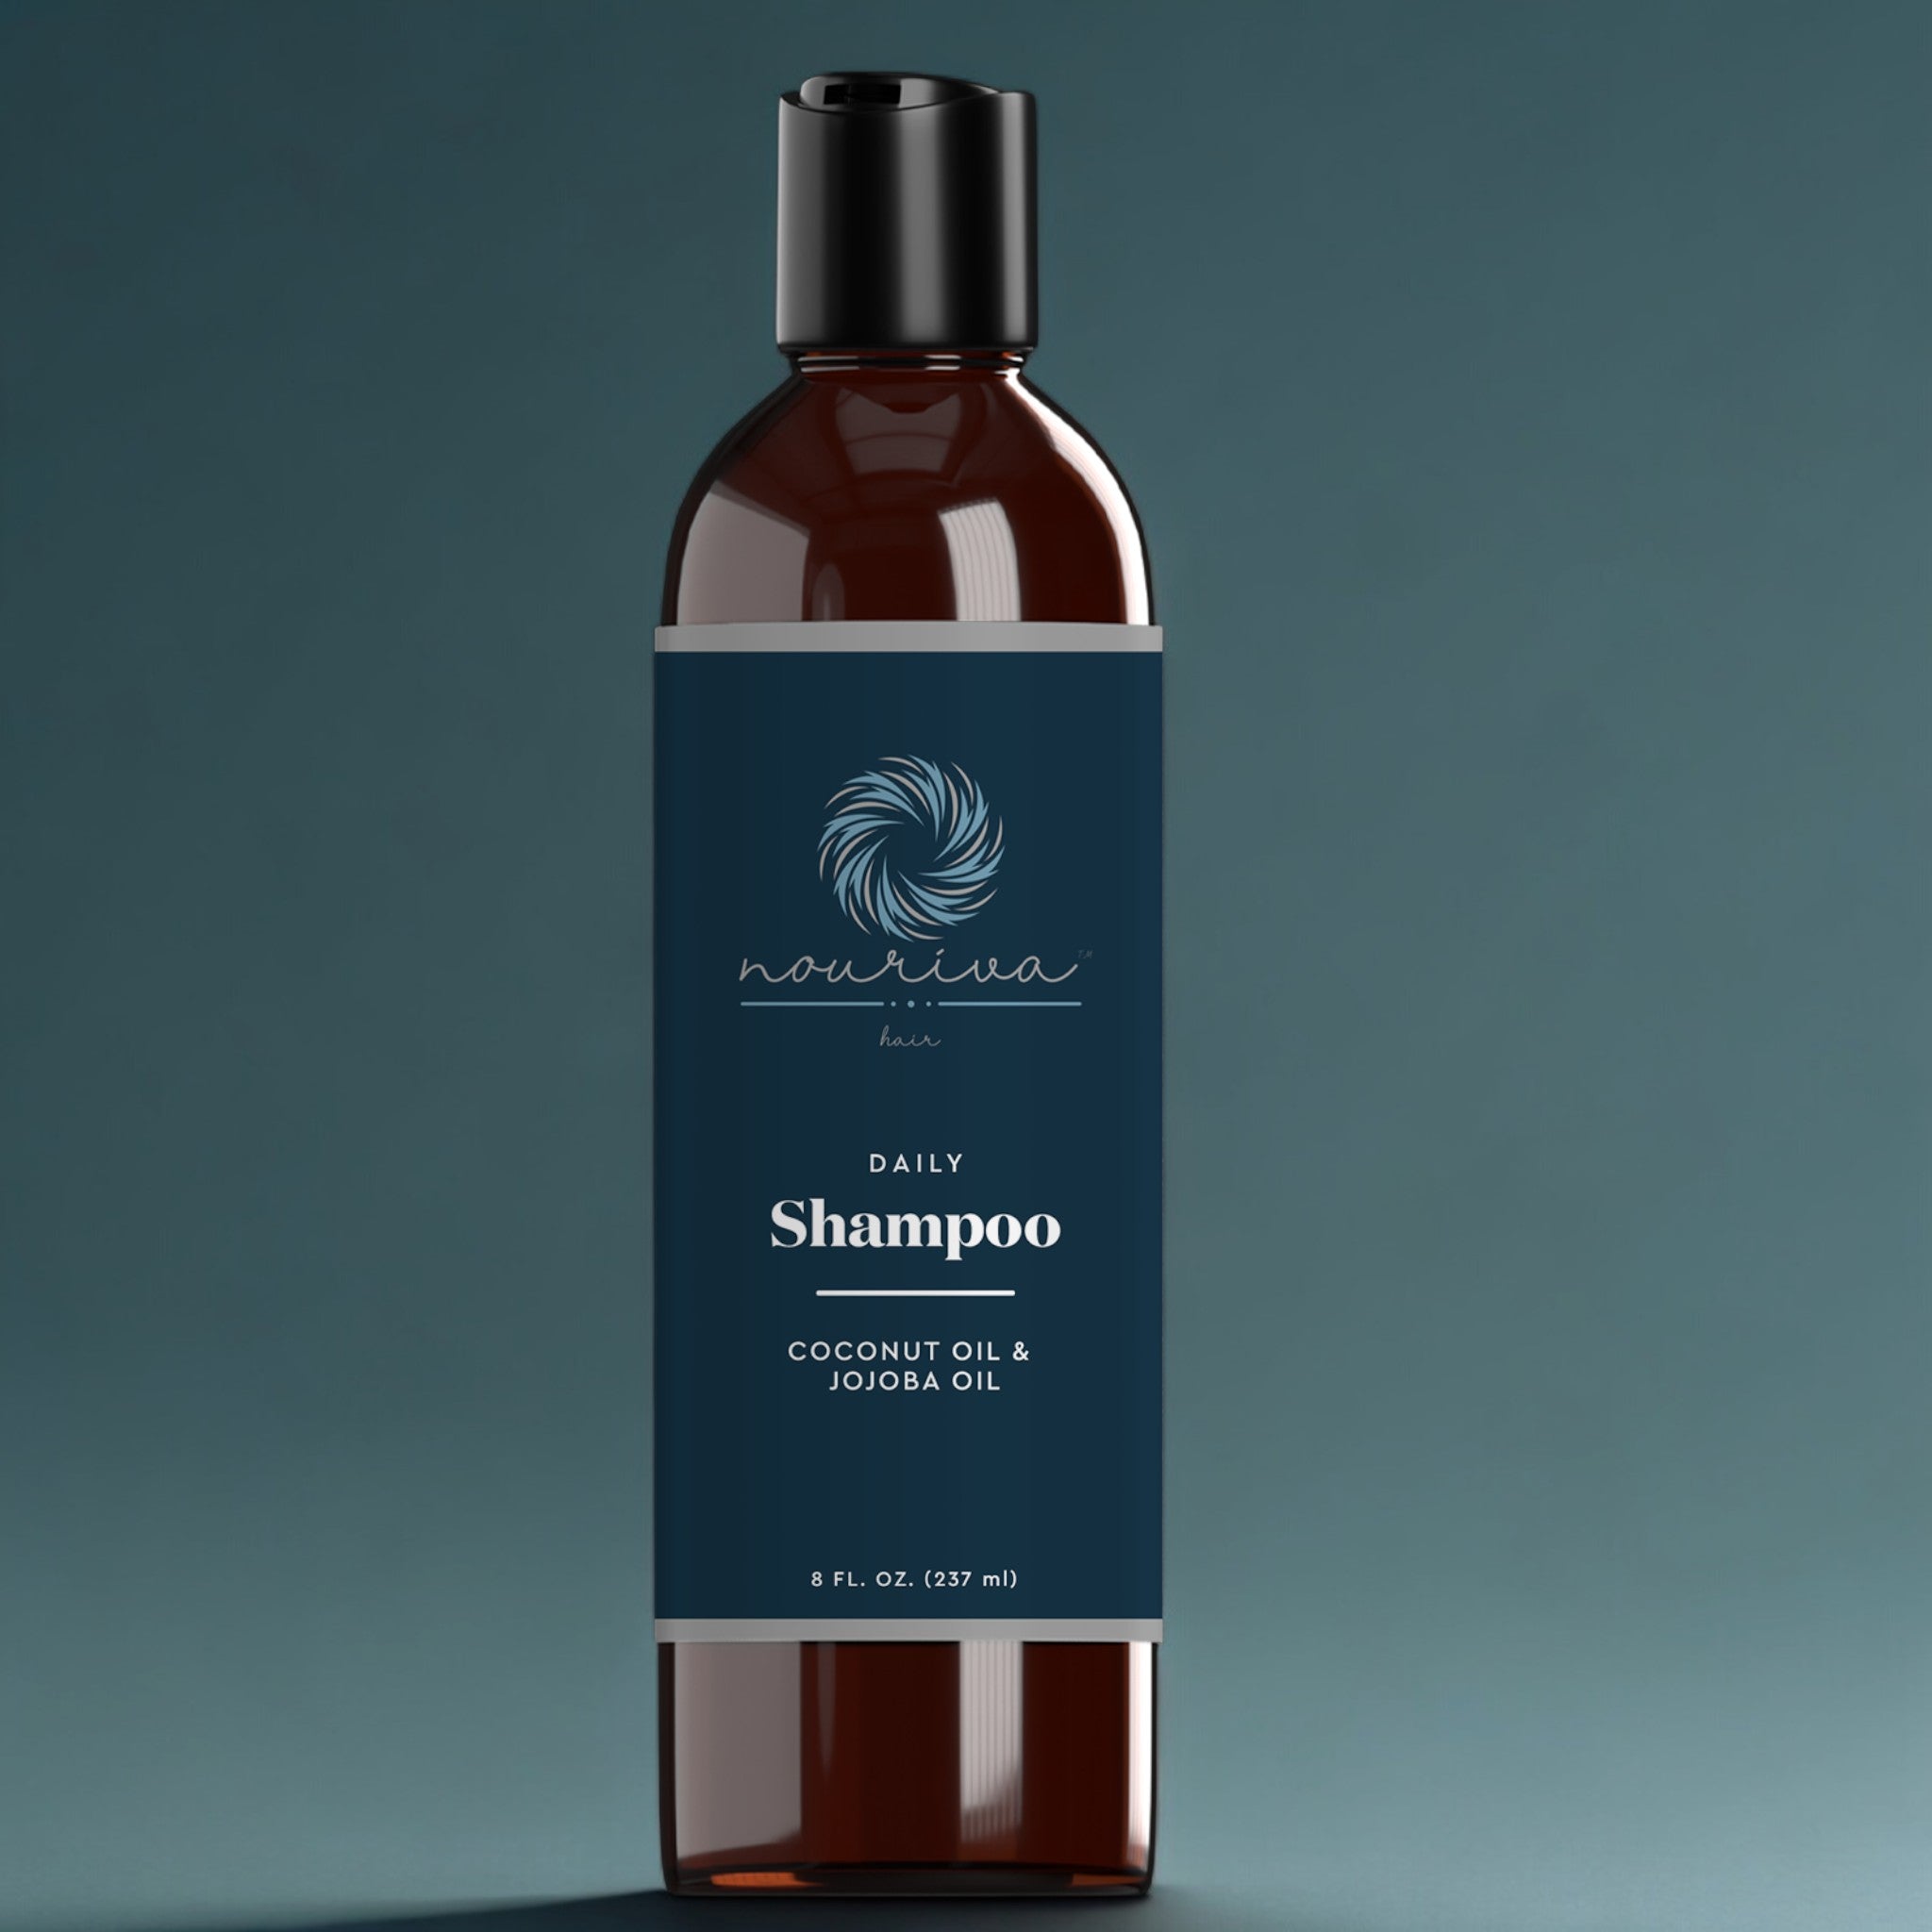 NEW! Daily Shampoo